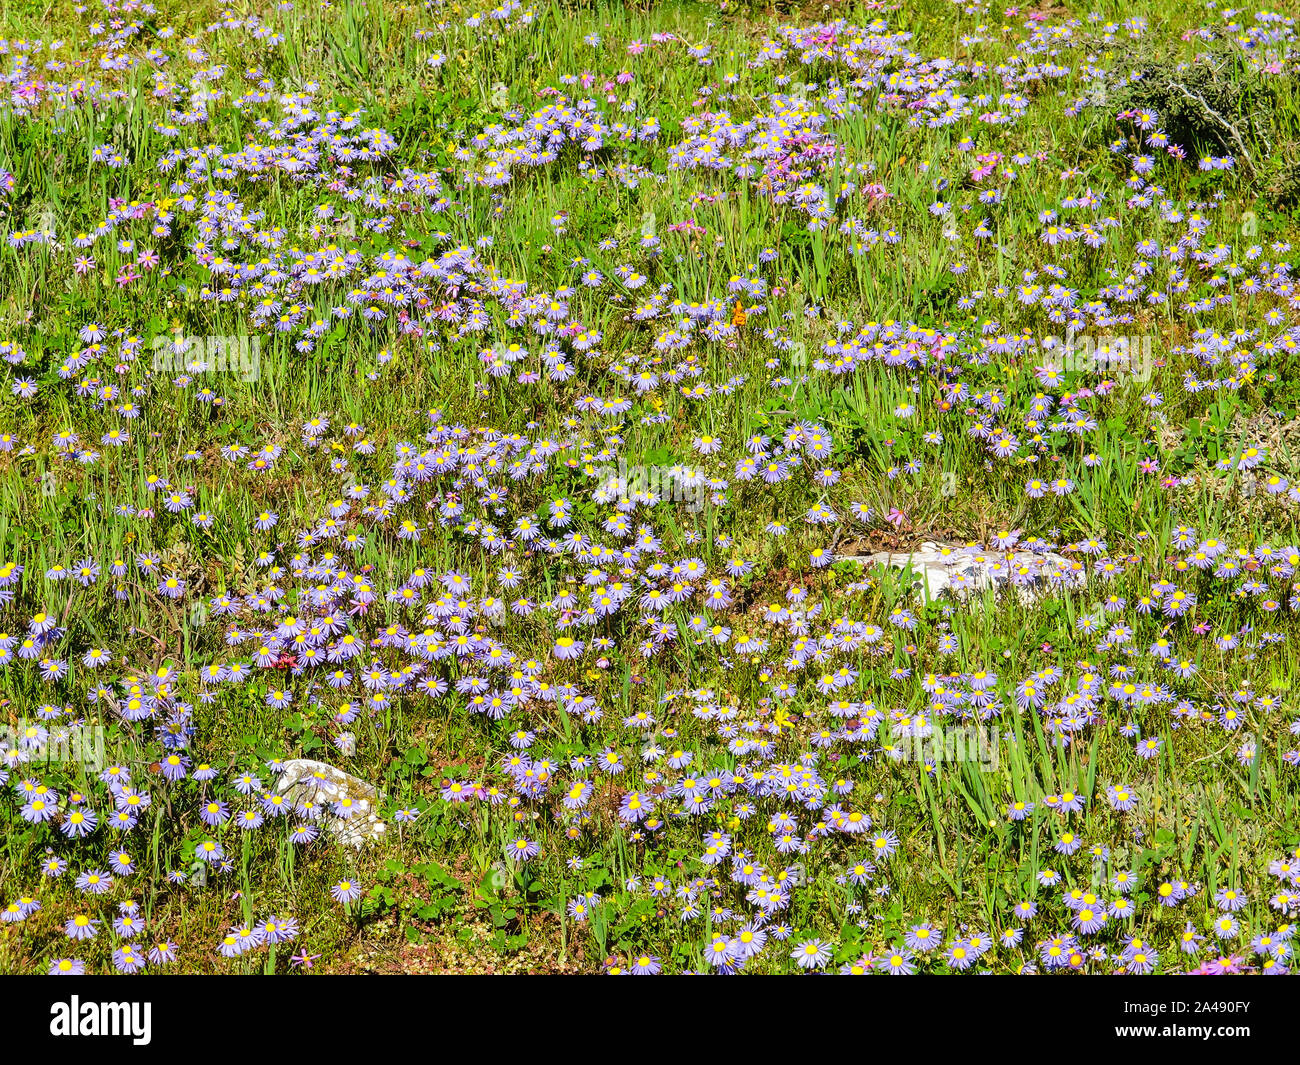 Champ ou pré de fleurs sauvages printemps afficher dans la province du Cap, Afrique du Sud, composé de violet ou lilas délicat petit type marguerite dans la nature Banque D'Images